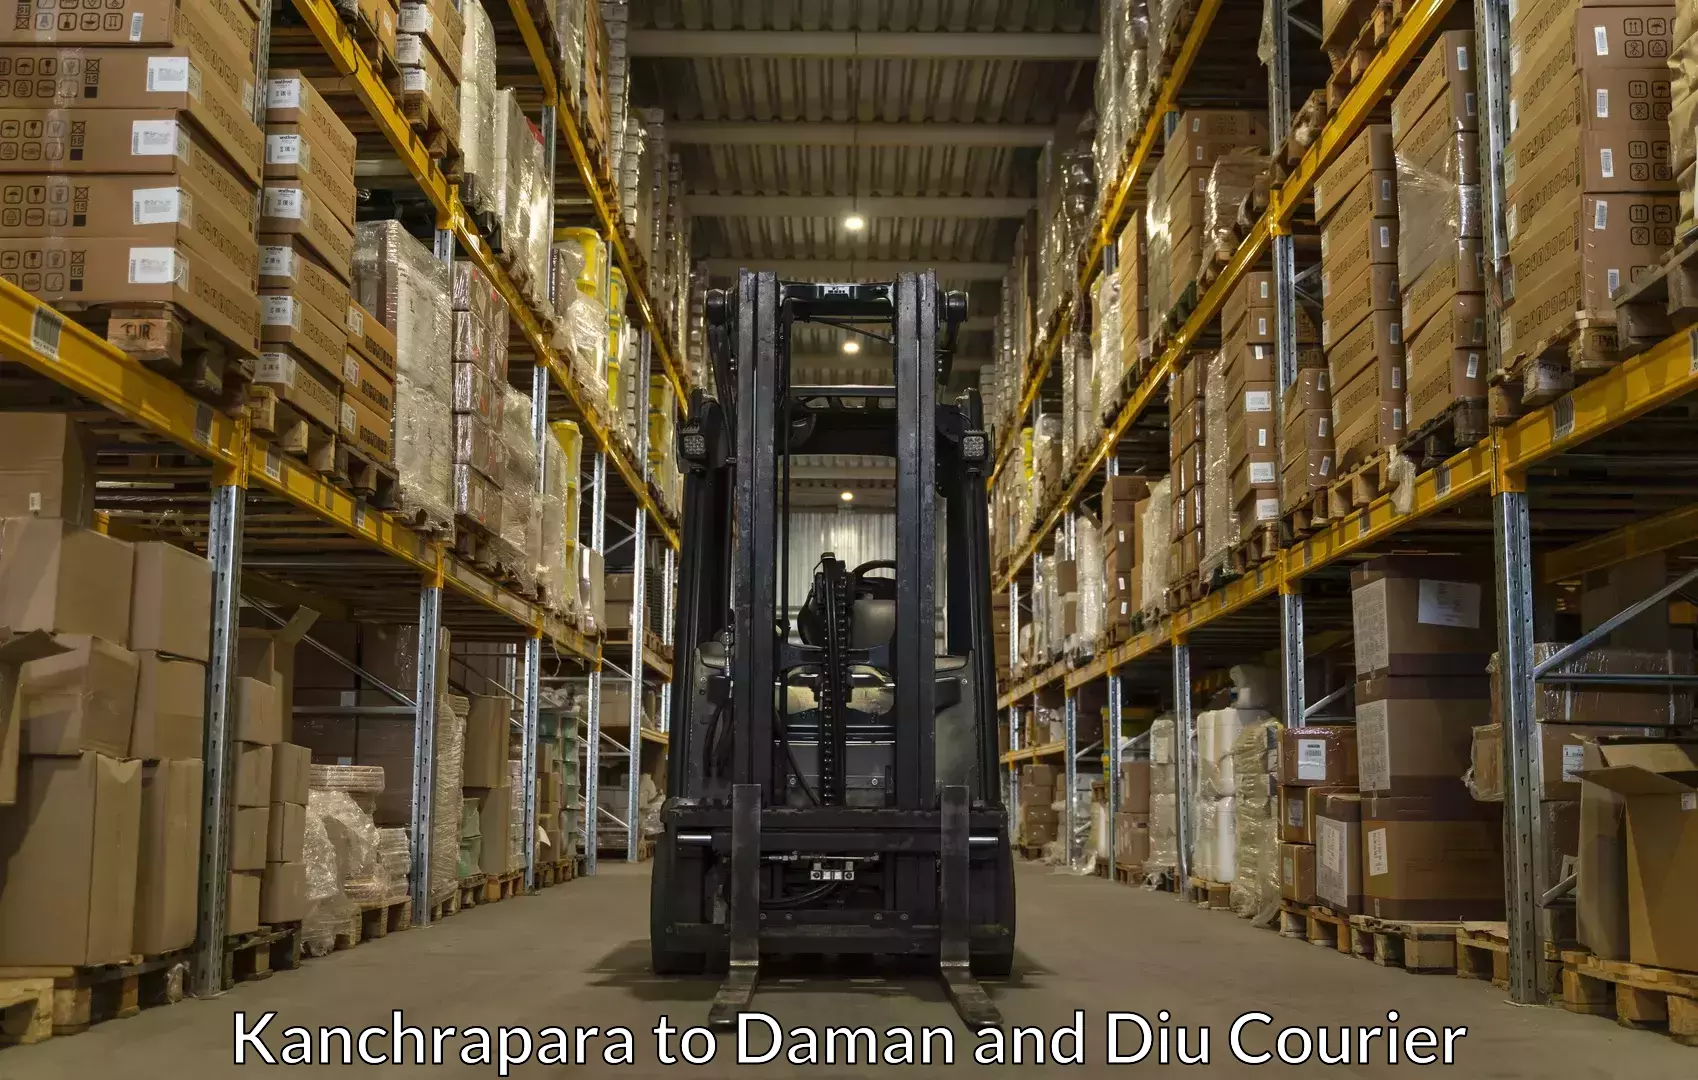 Luggage transport service Kanchrapara to Daman and Diu